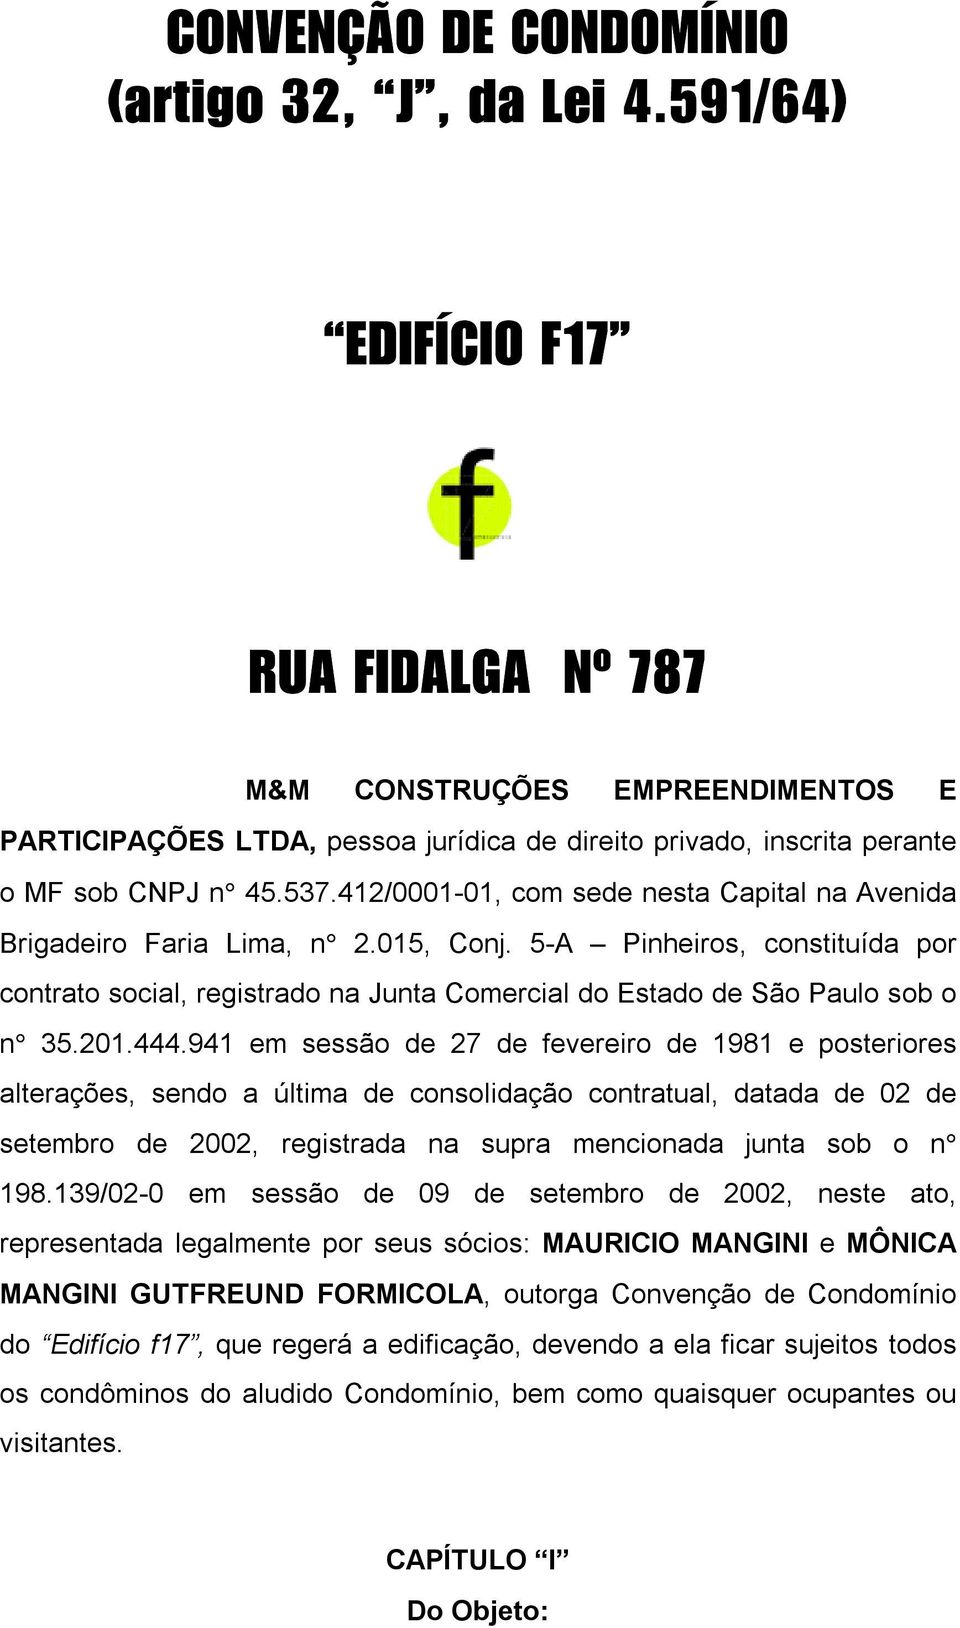 412/0001-01, com sede nesta Capital na Avenida Brigadeiro Faria Lima, n 2.015, Conj. 5-A Pinheiros, constituída por contrato social, registrado na Junta Comercial do Estado de São Paulo sob o n 35.